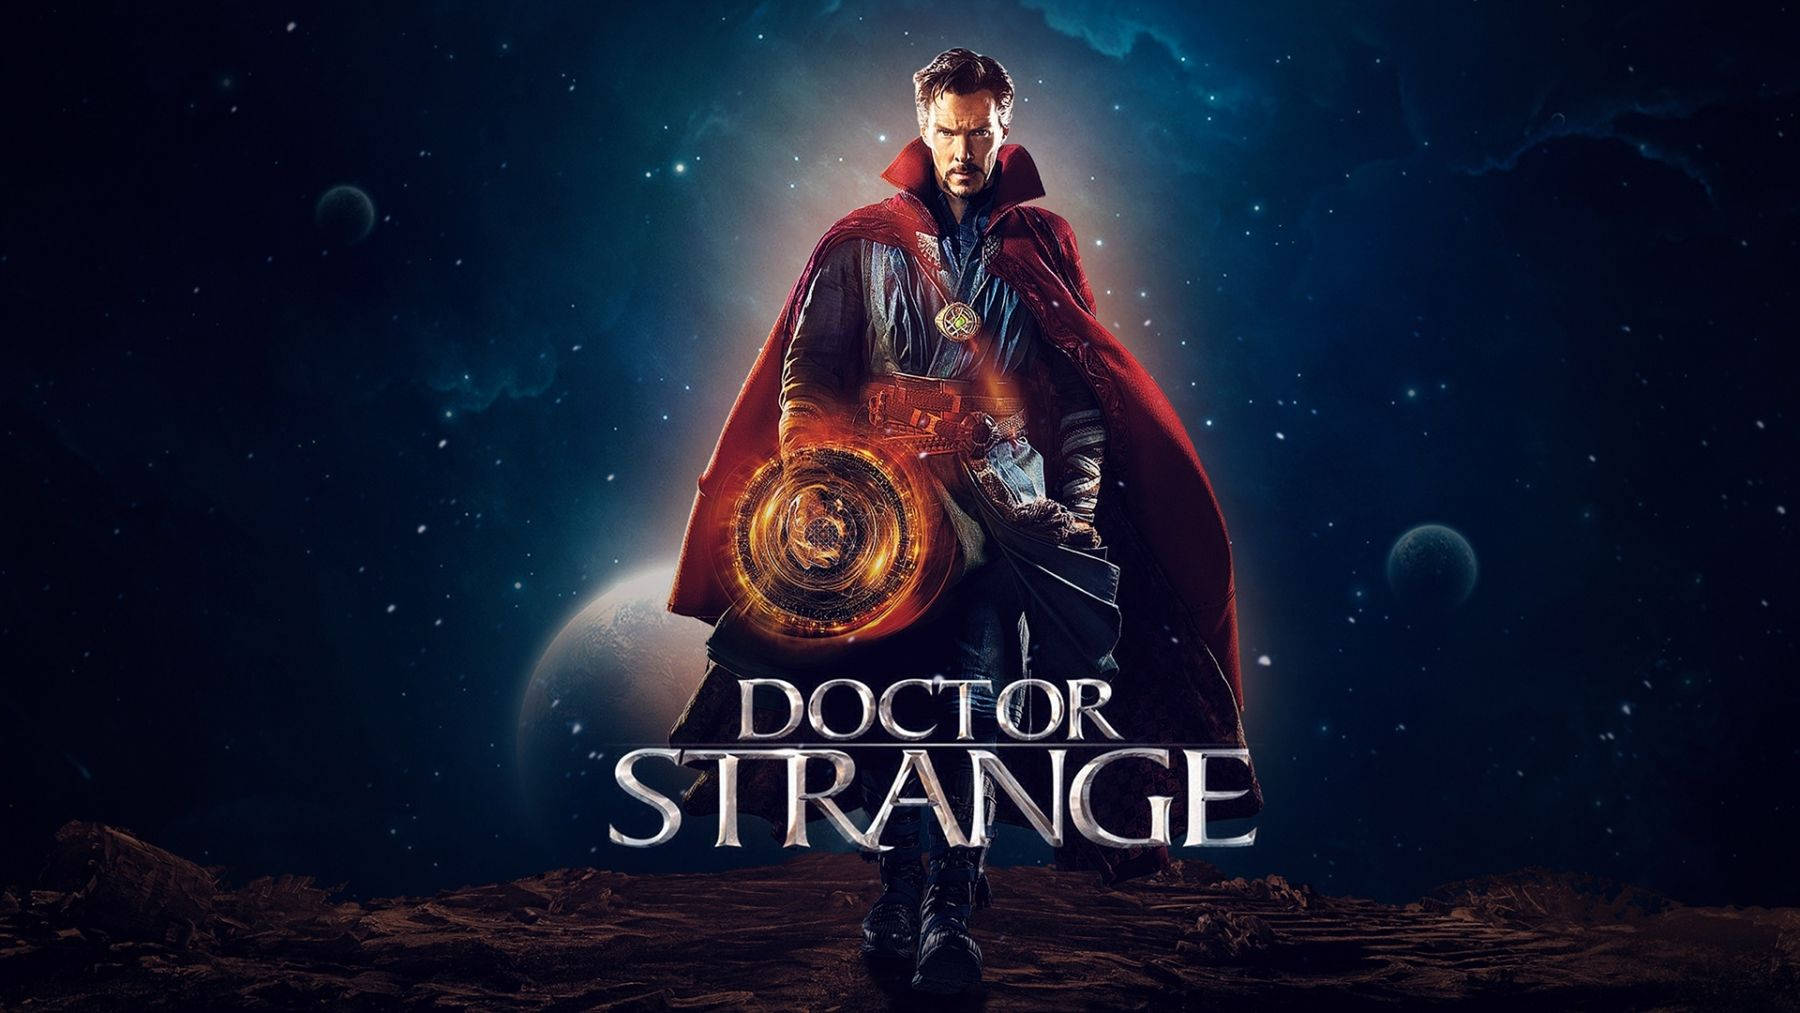 Dr Strange Promotional Artwork Background